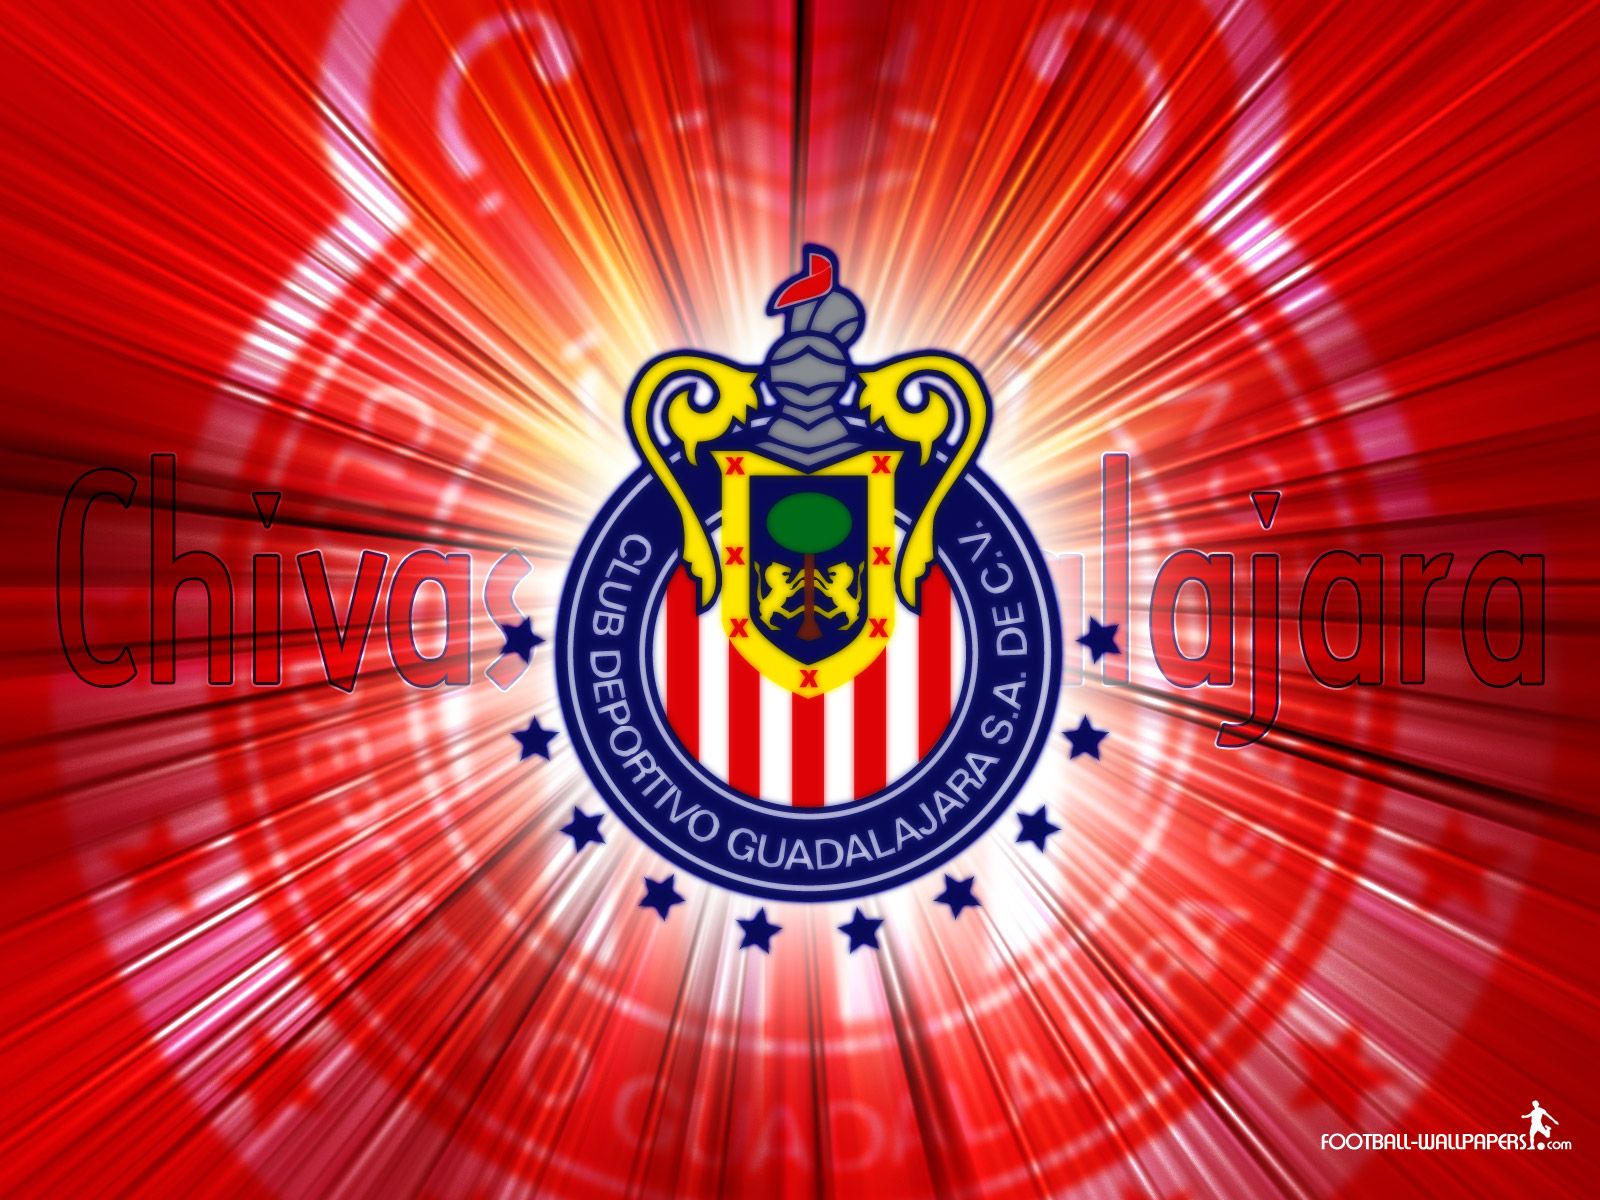 chivas wallpaper,flag,emblem,symbol,illustration,stadium